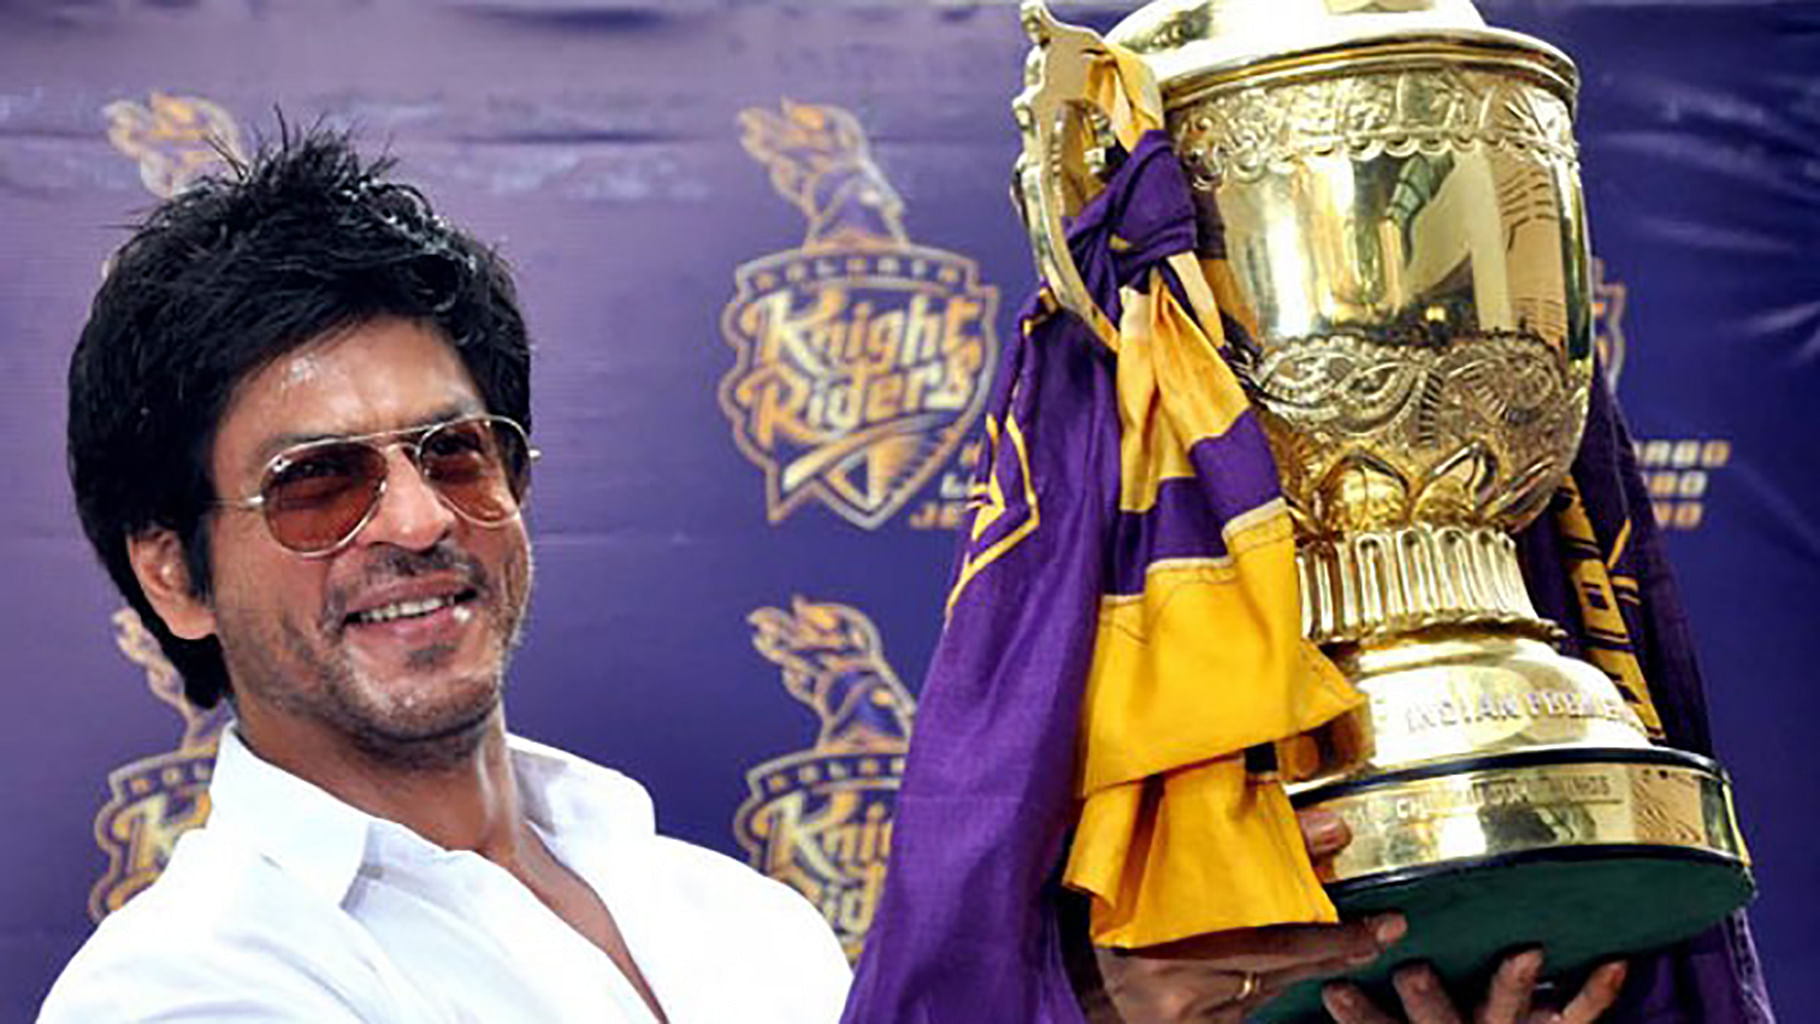 Shah Rukh celebrates KKR’s victory.